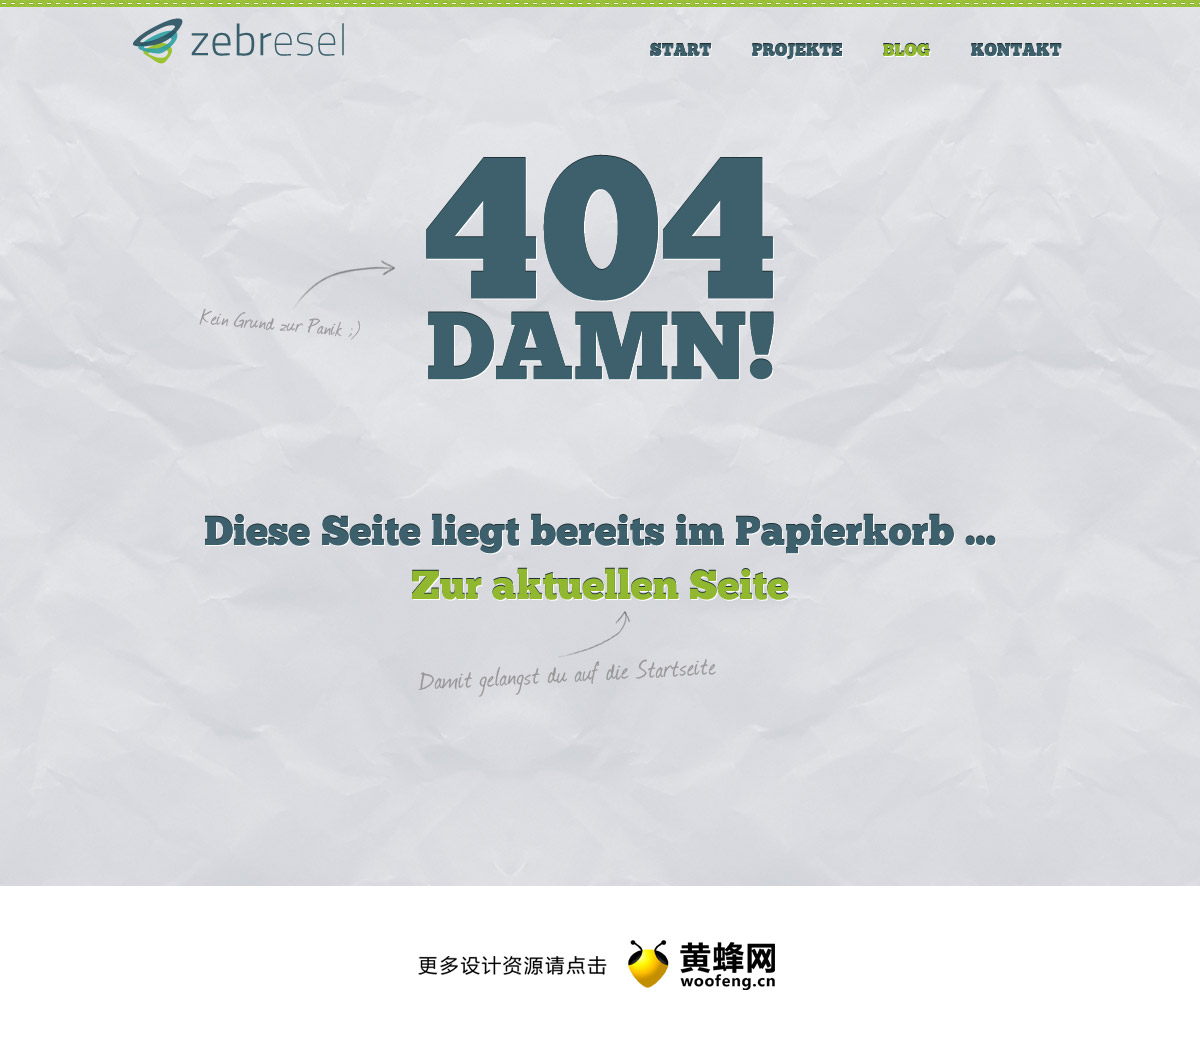 Zebresel网站404创意页面设计，来源自黄蜂网https://woofeng.cn/webcut/